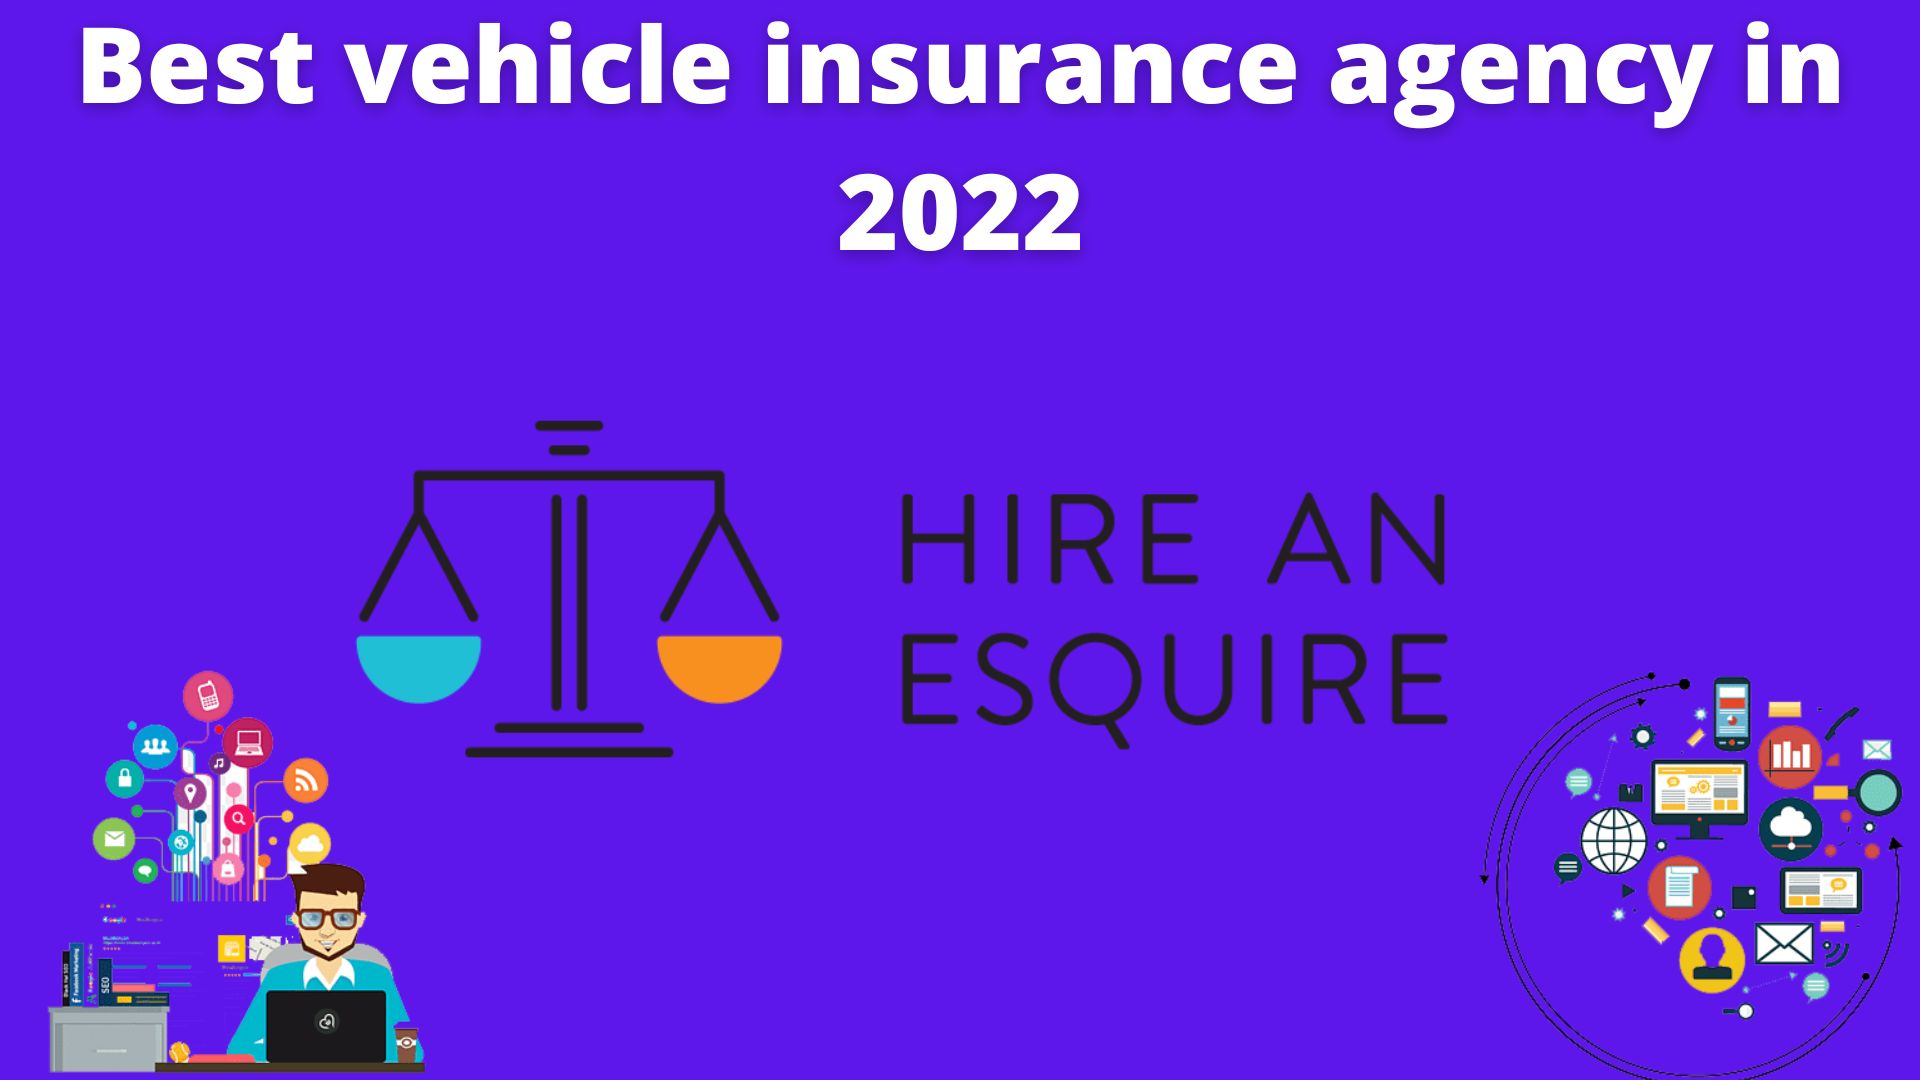 Best vehicle insurance agency in 2022